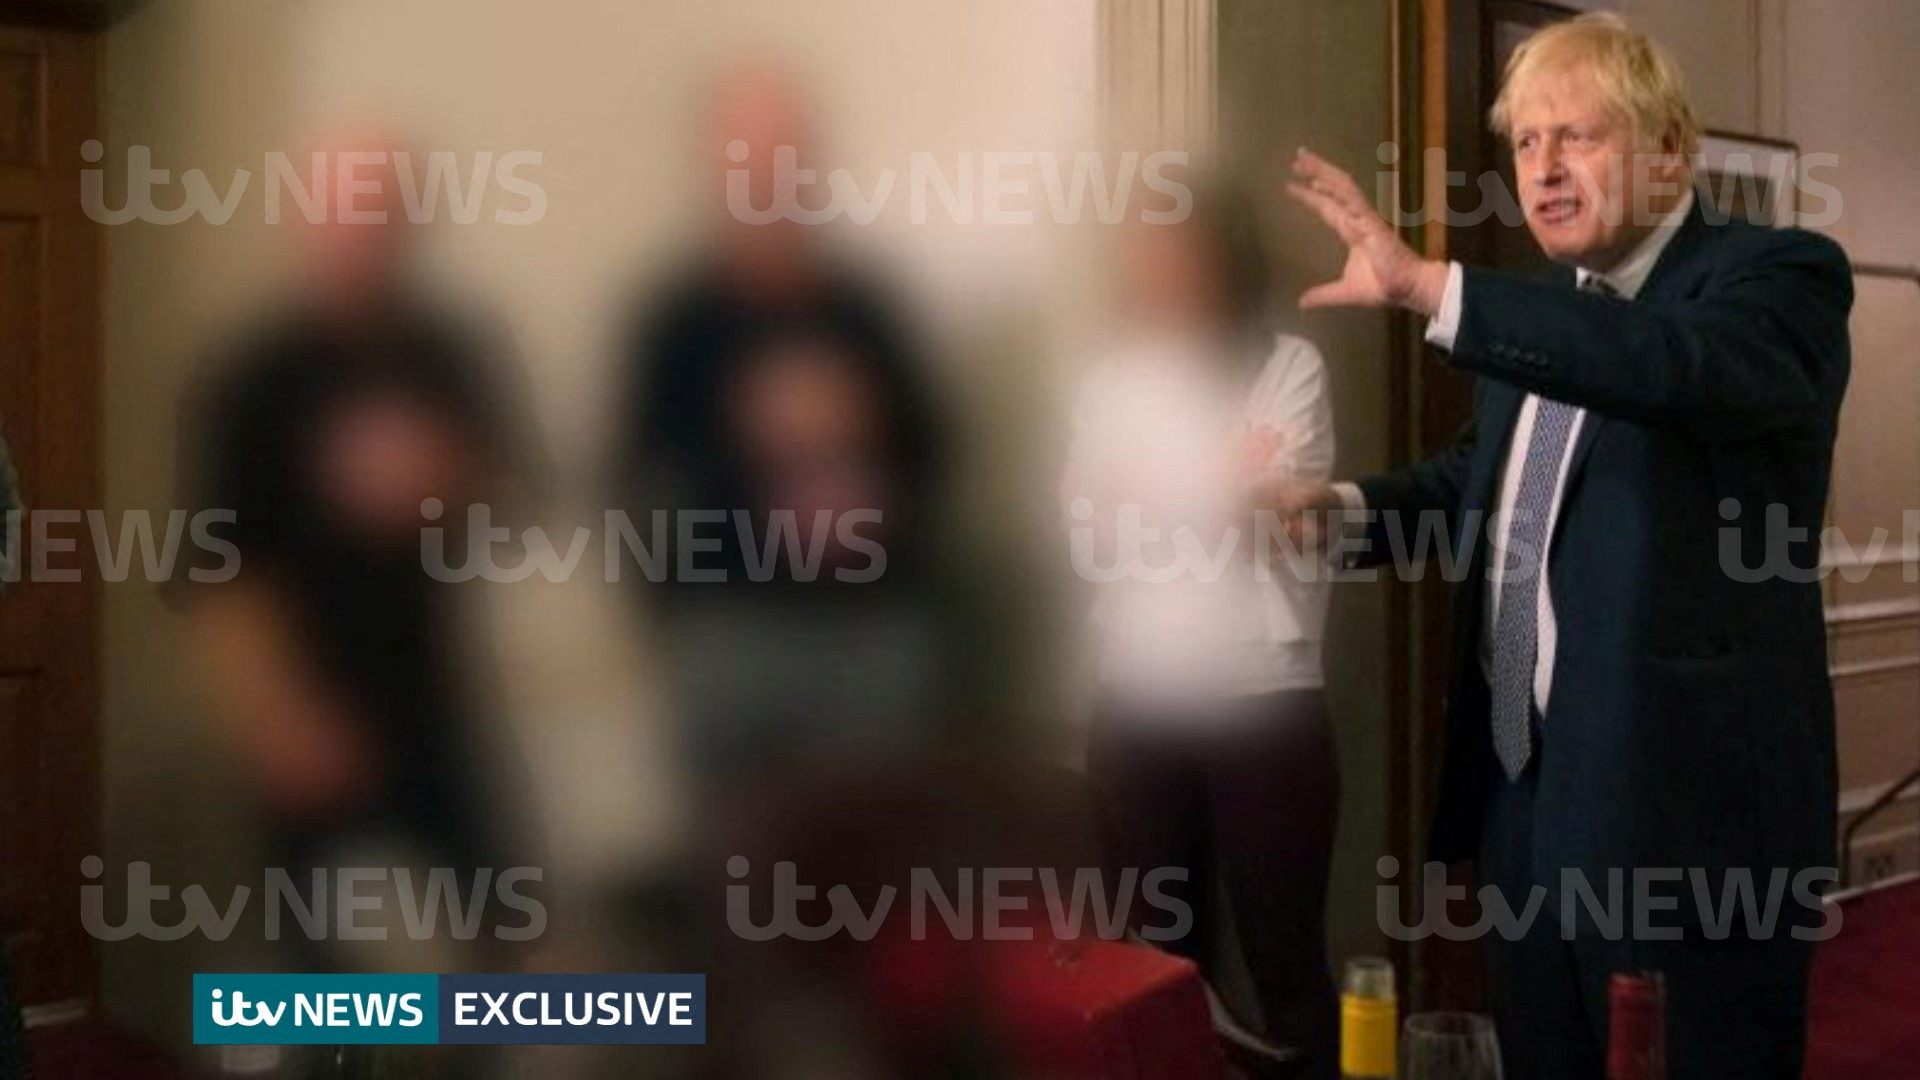 Las escenas captadas por la cámara marcan una nueva contradicción en relación a los mensajes públicos de Johnson (ITV News/REUTERS)